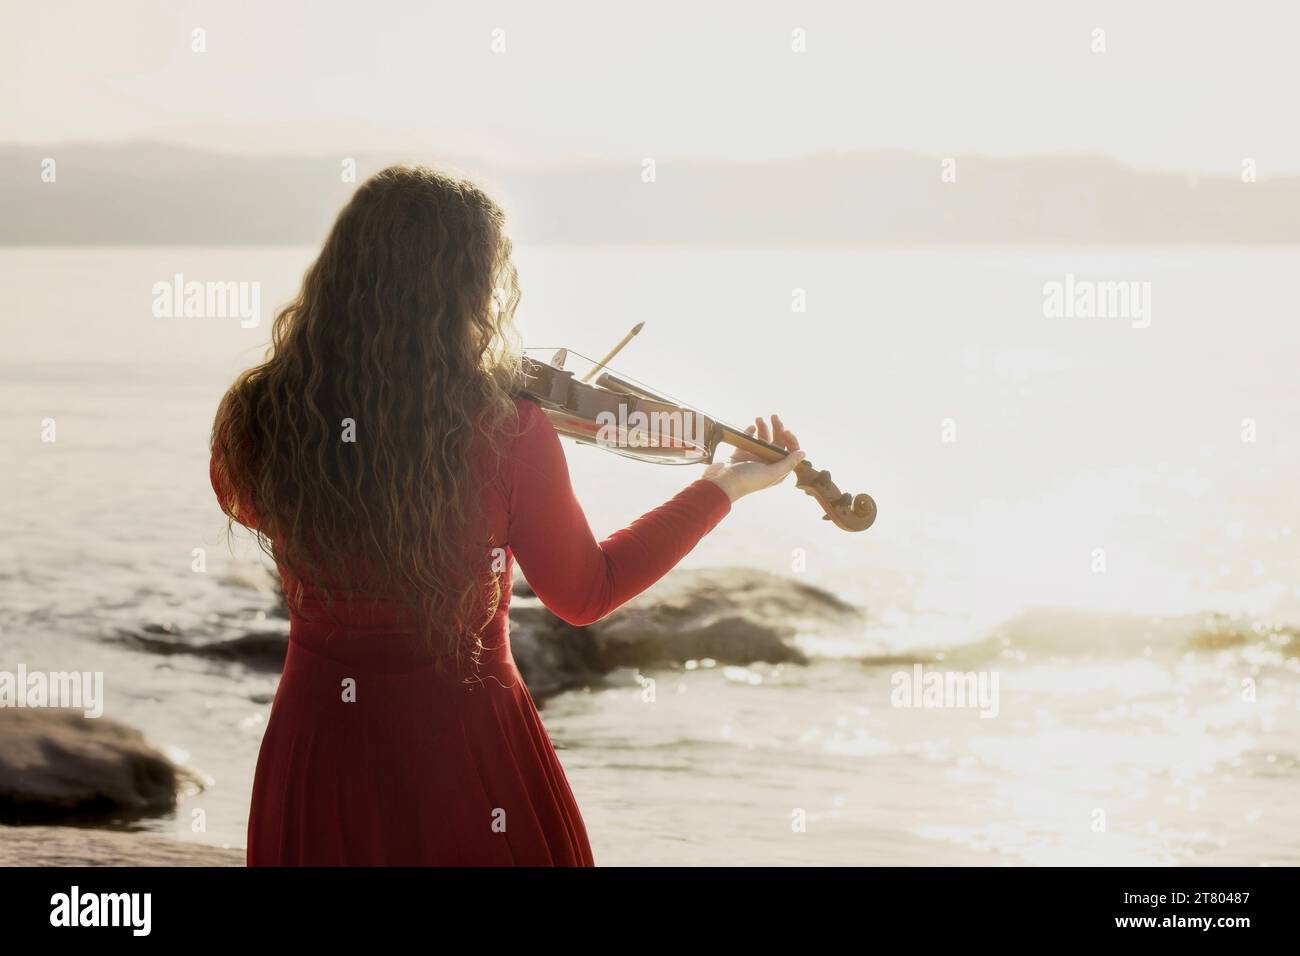 scène romantique d'une femme jouant du violon devant la mer Banque D'Images